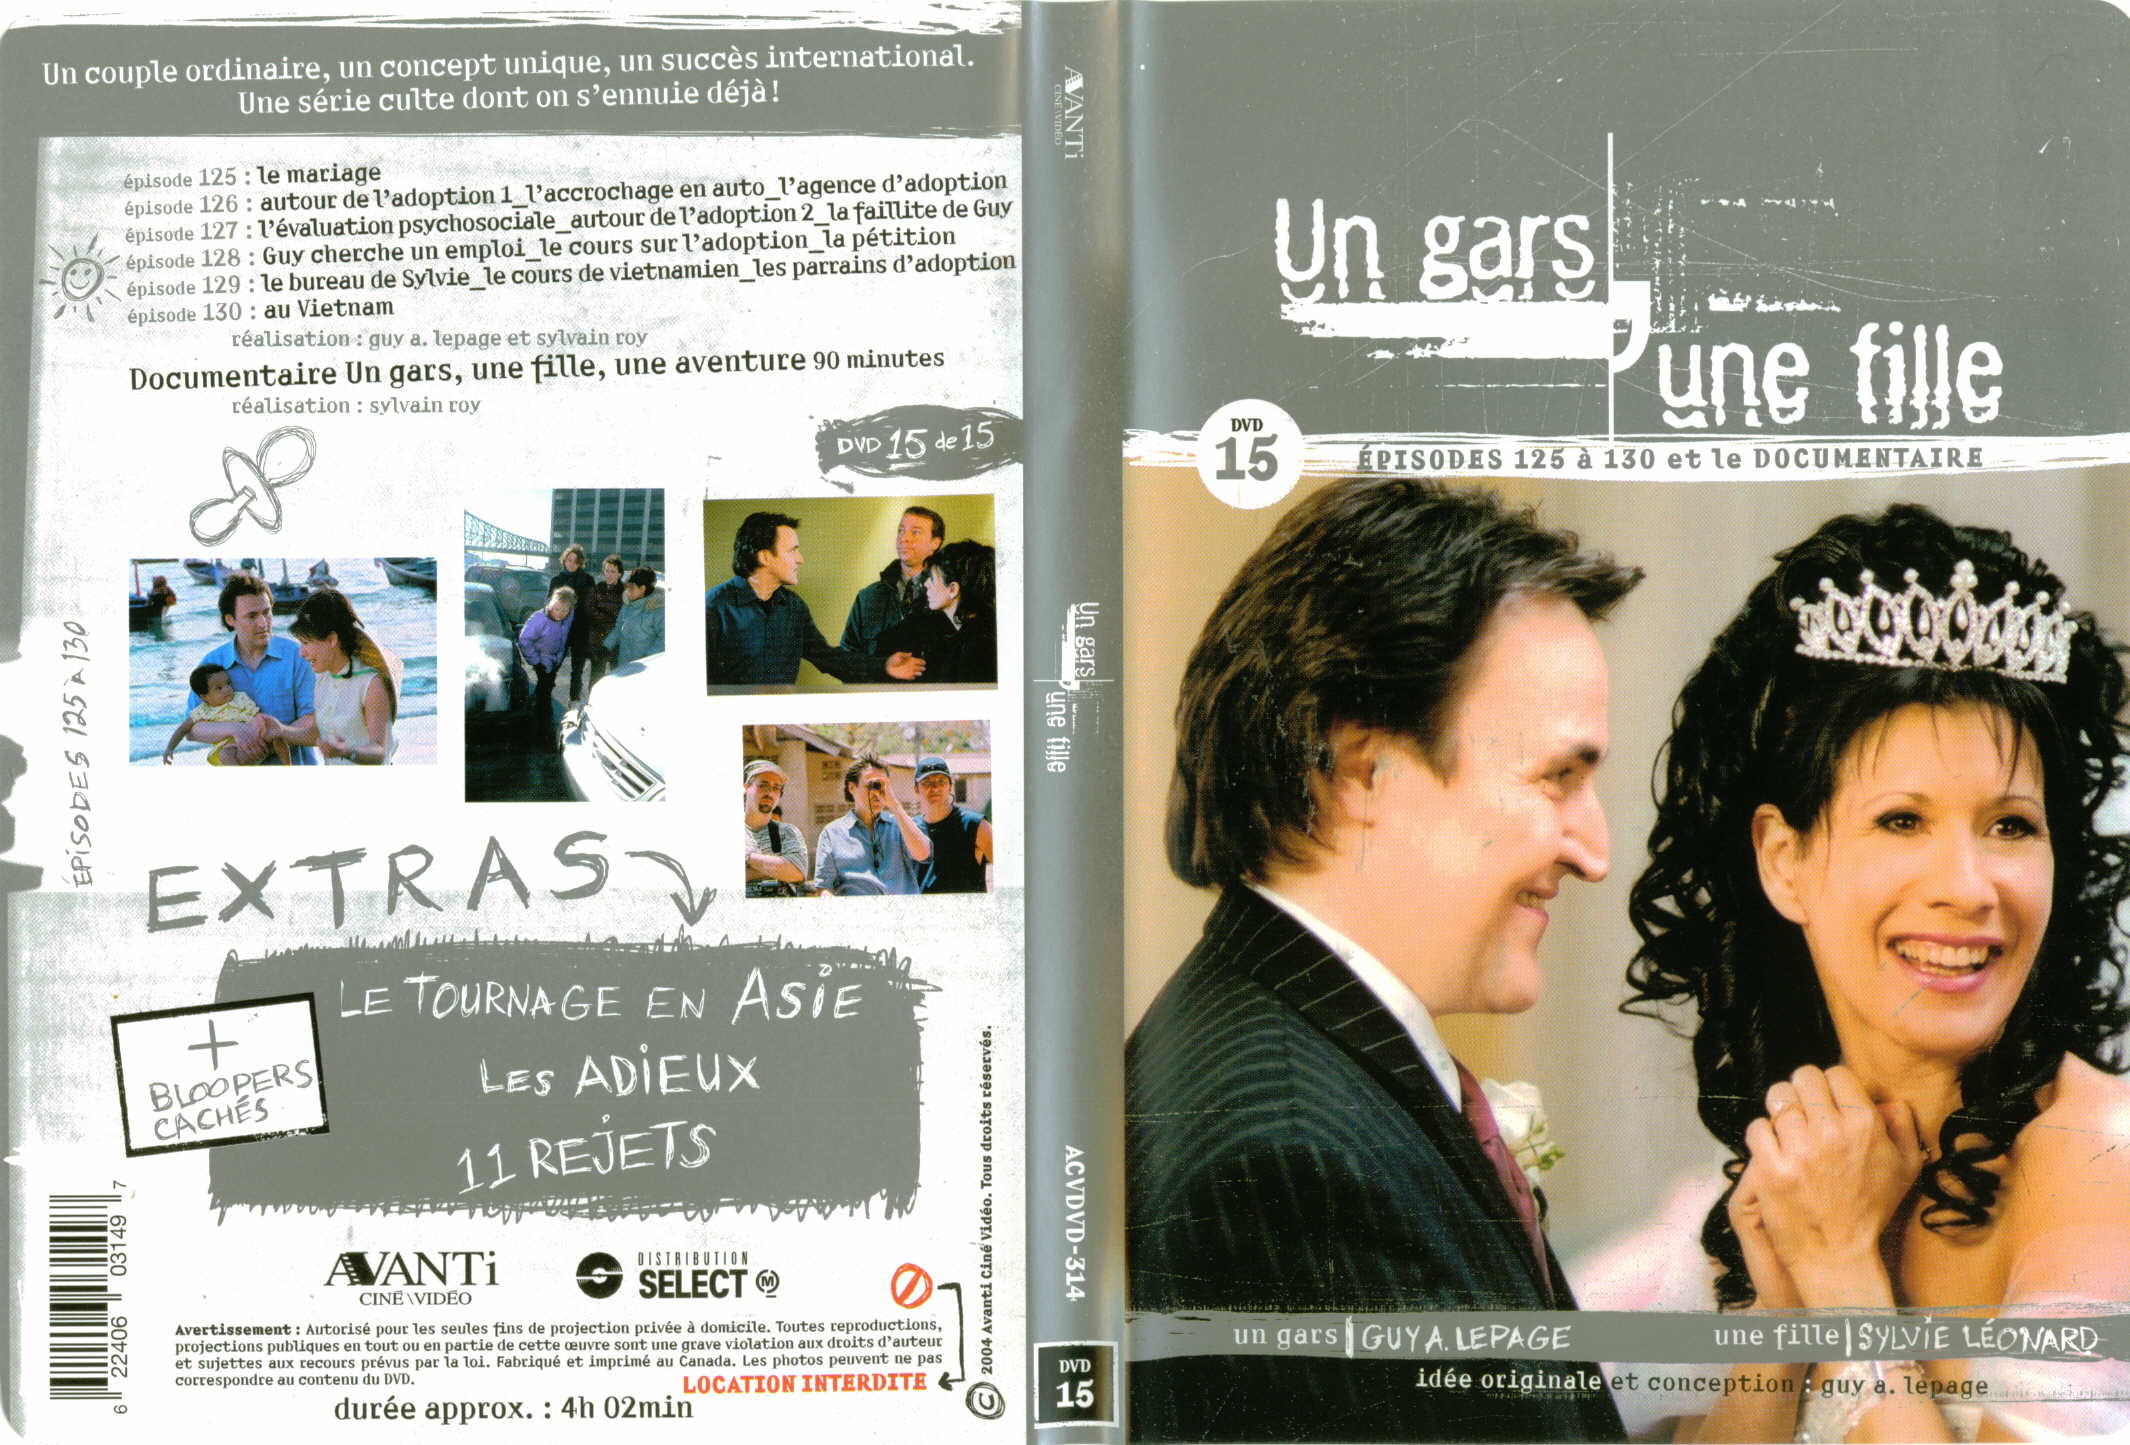 Jaquette DVD Un gars une fille (Canadienne) DVD 15